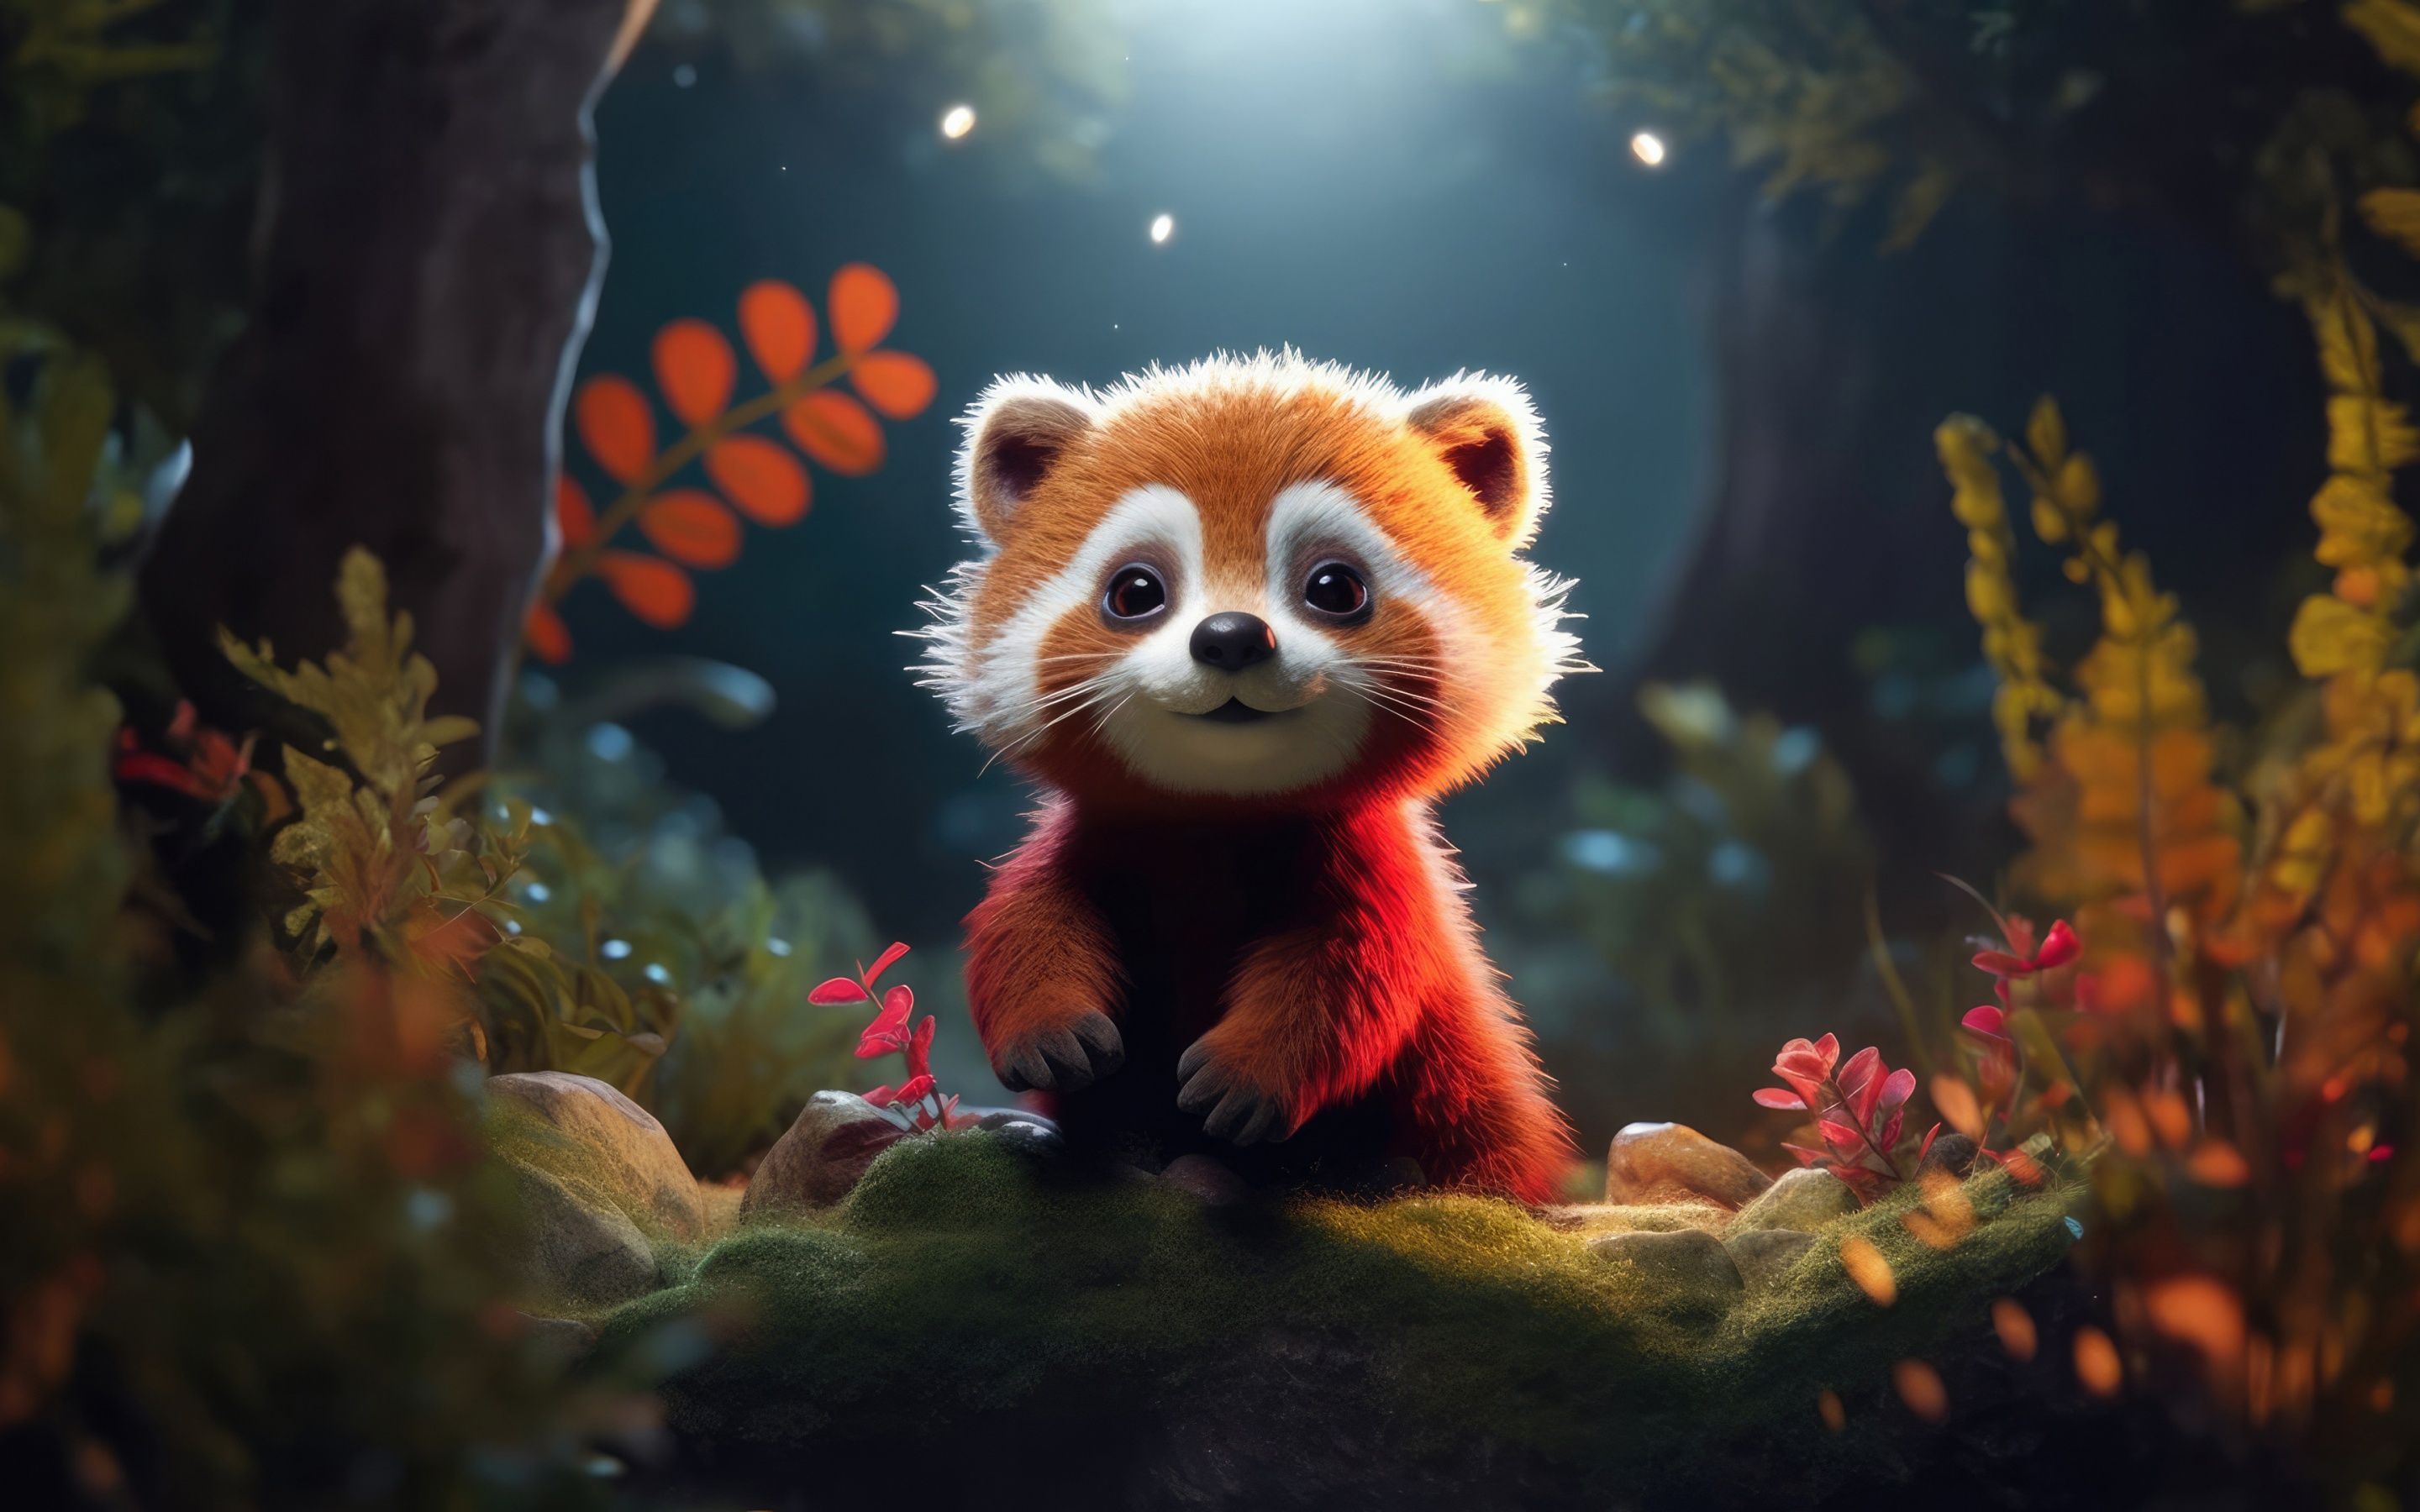 Red panda Wallpaper 4K, Adorable, Cute animal, AI art